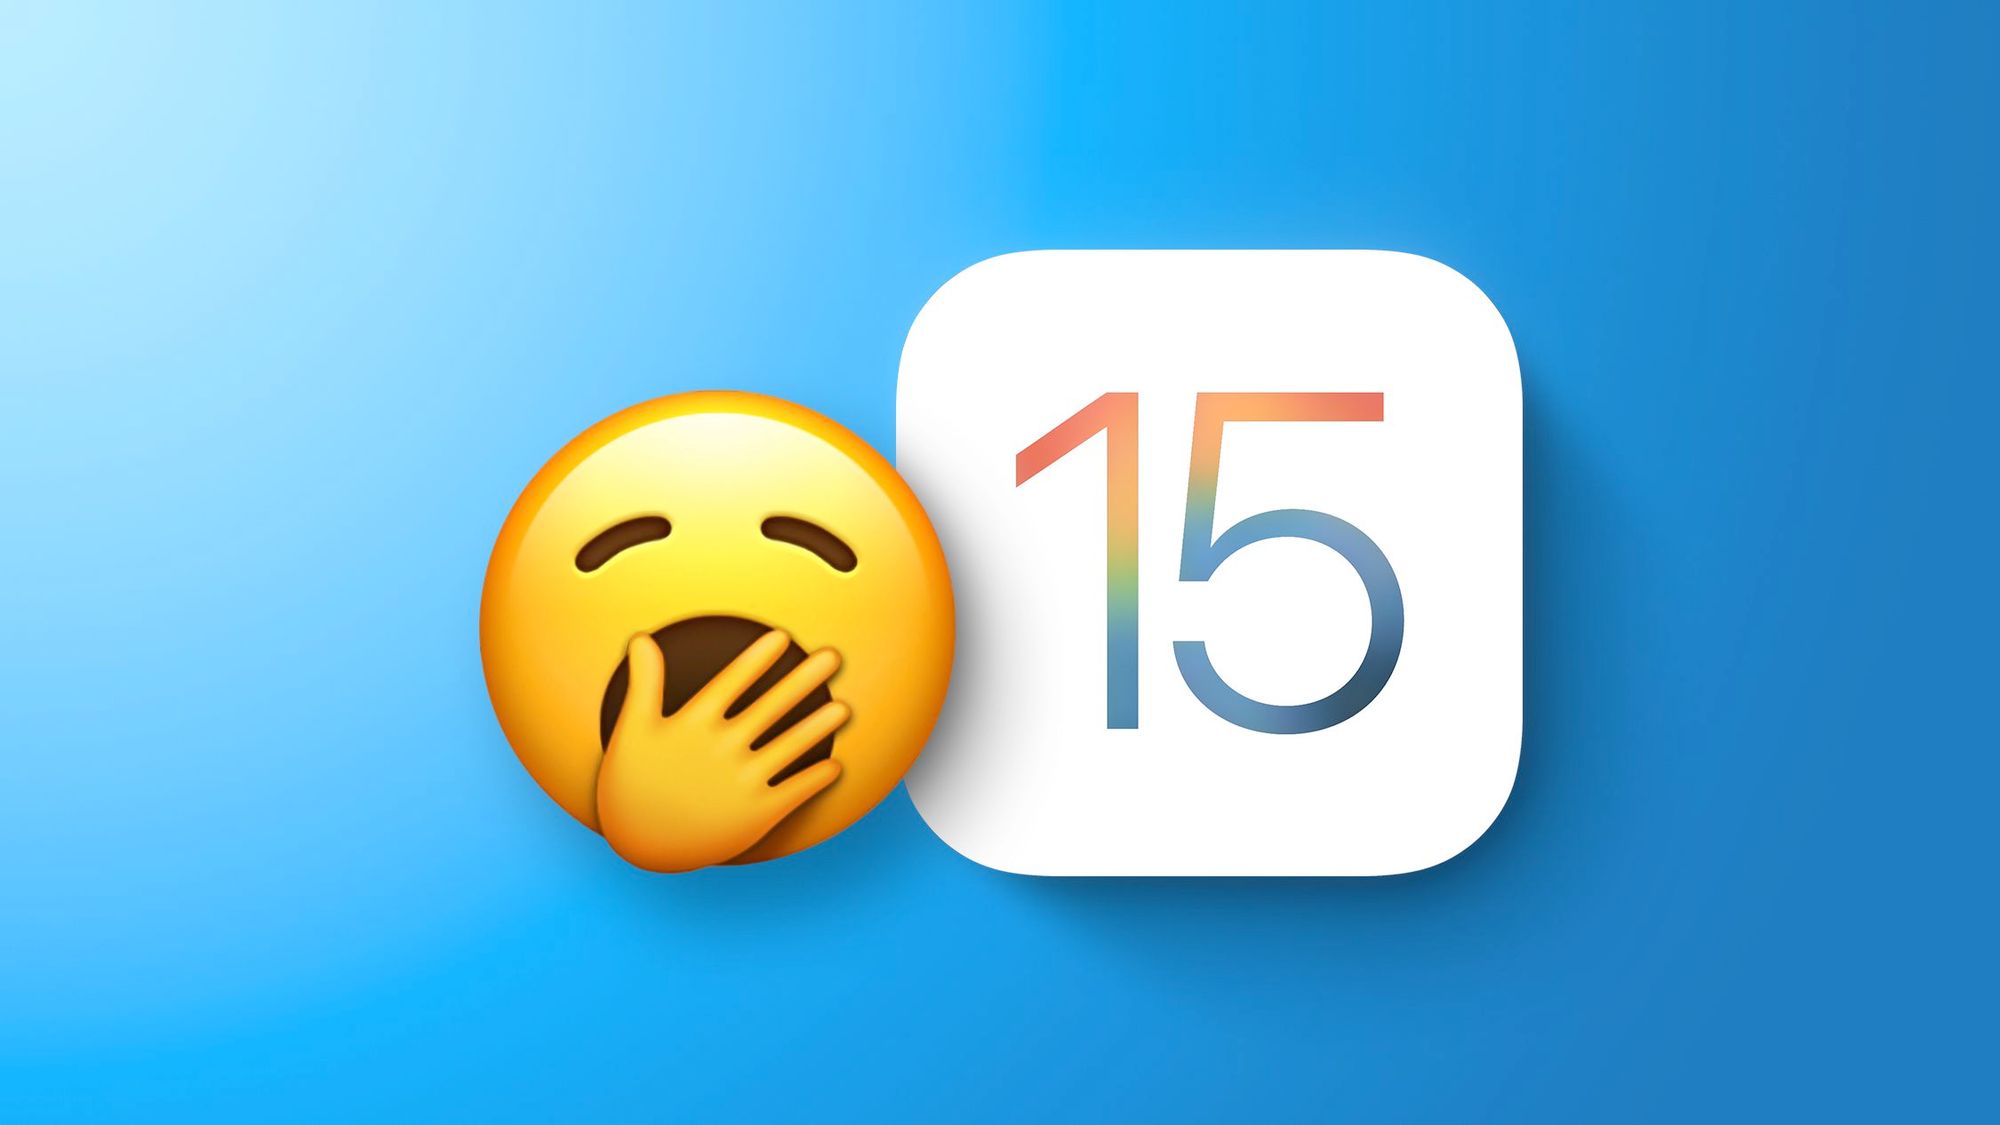 Пользователи iPhone и iPad недовольны анонсом iOS 15 и iPadOS 15 и названием iPhone 13